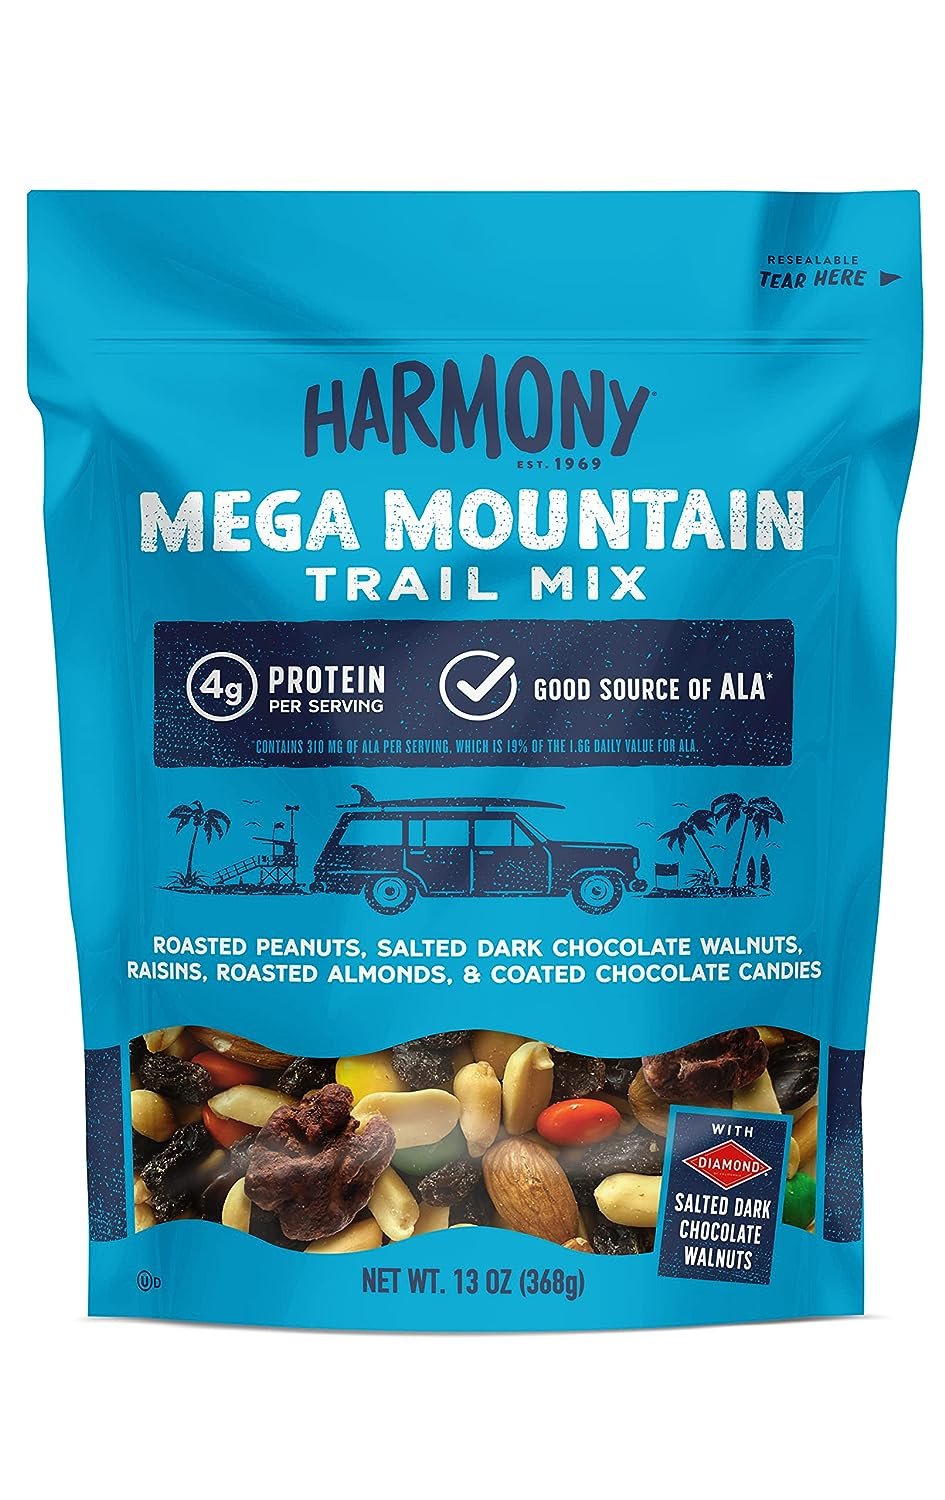 Best Road Trip Snacks - Harmony Trail Mix